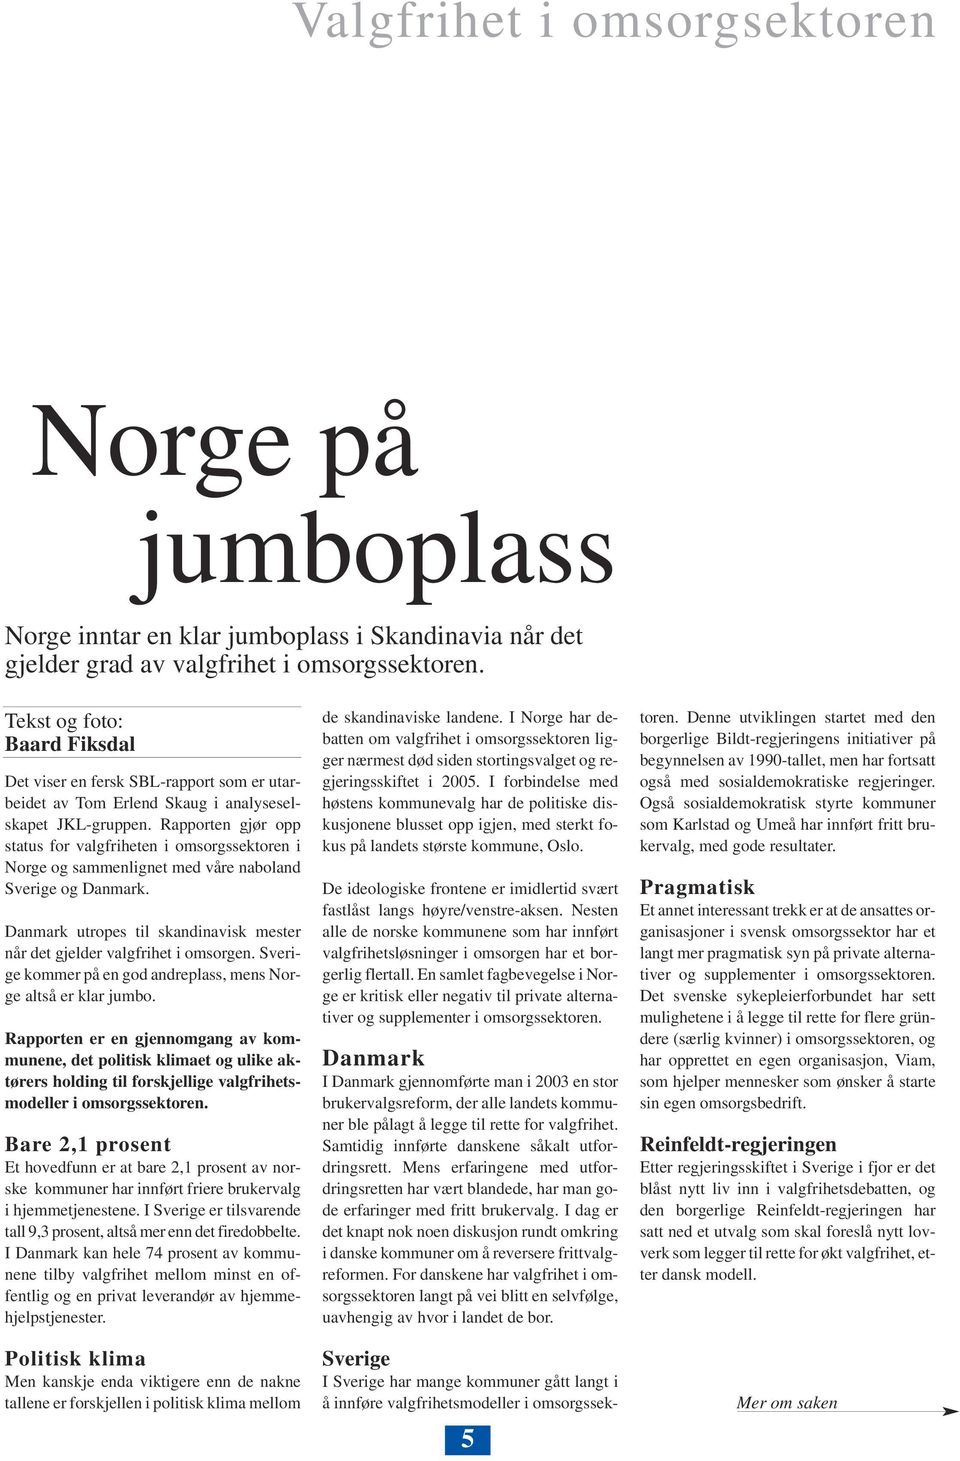 Rapporten gjør opp status for valgfriheten i omsorgssektoren i Norge og sammenlignet med våre naboland Sverige og Danmark.